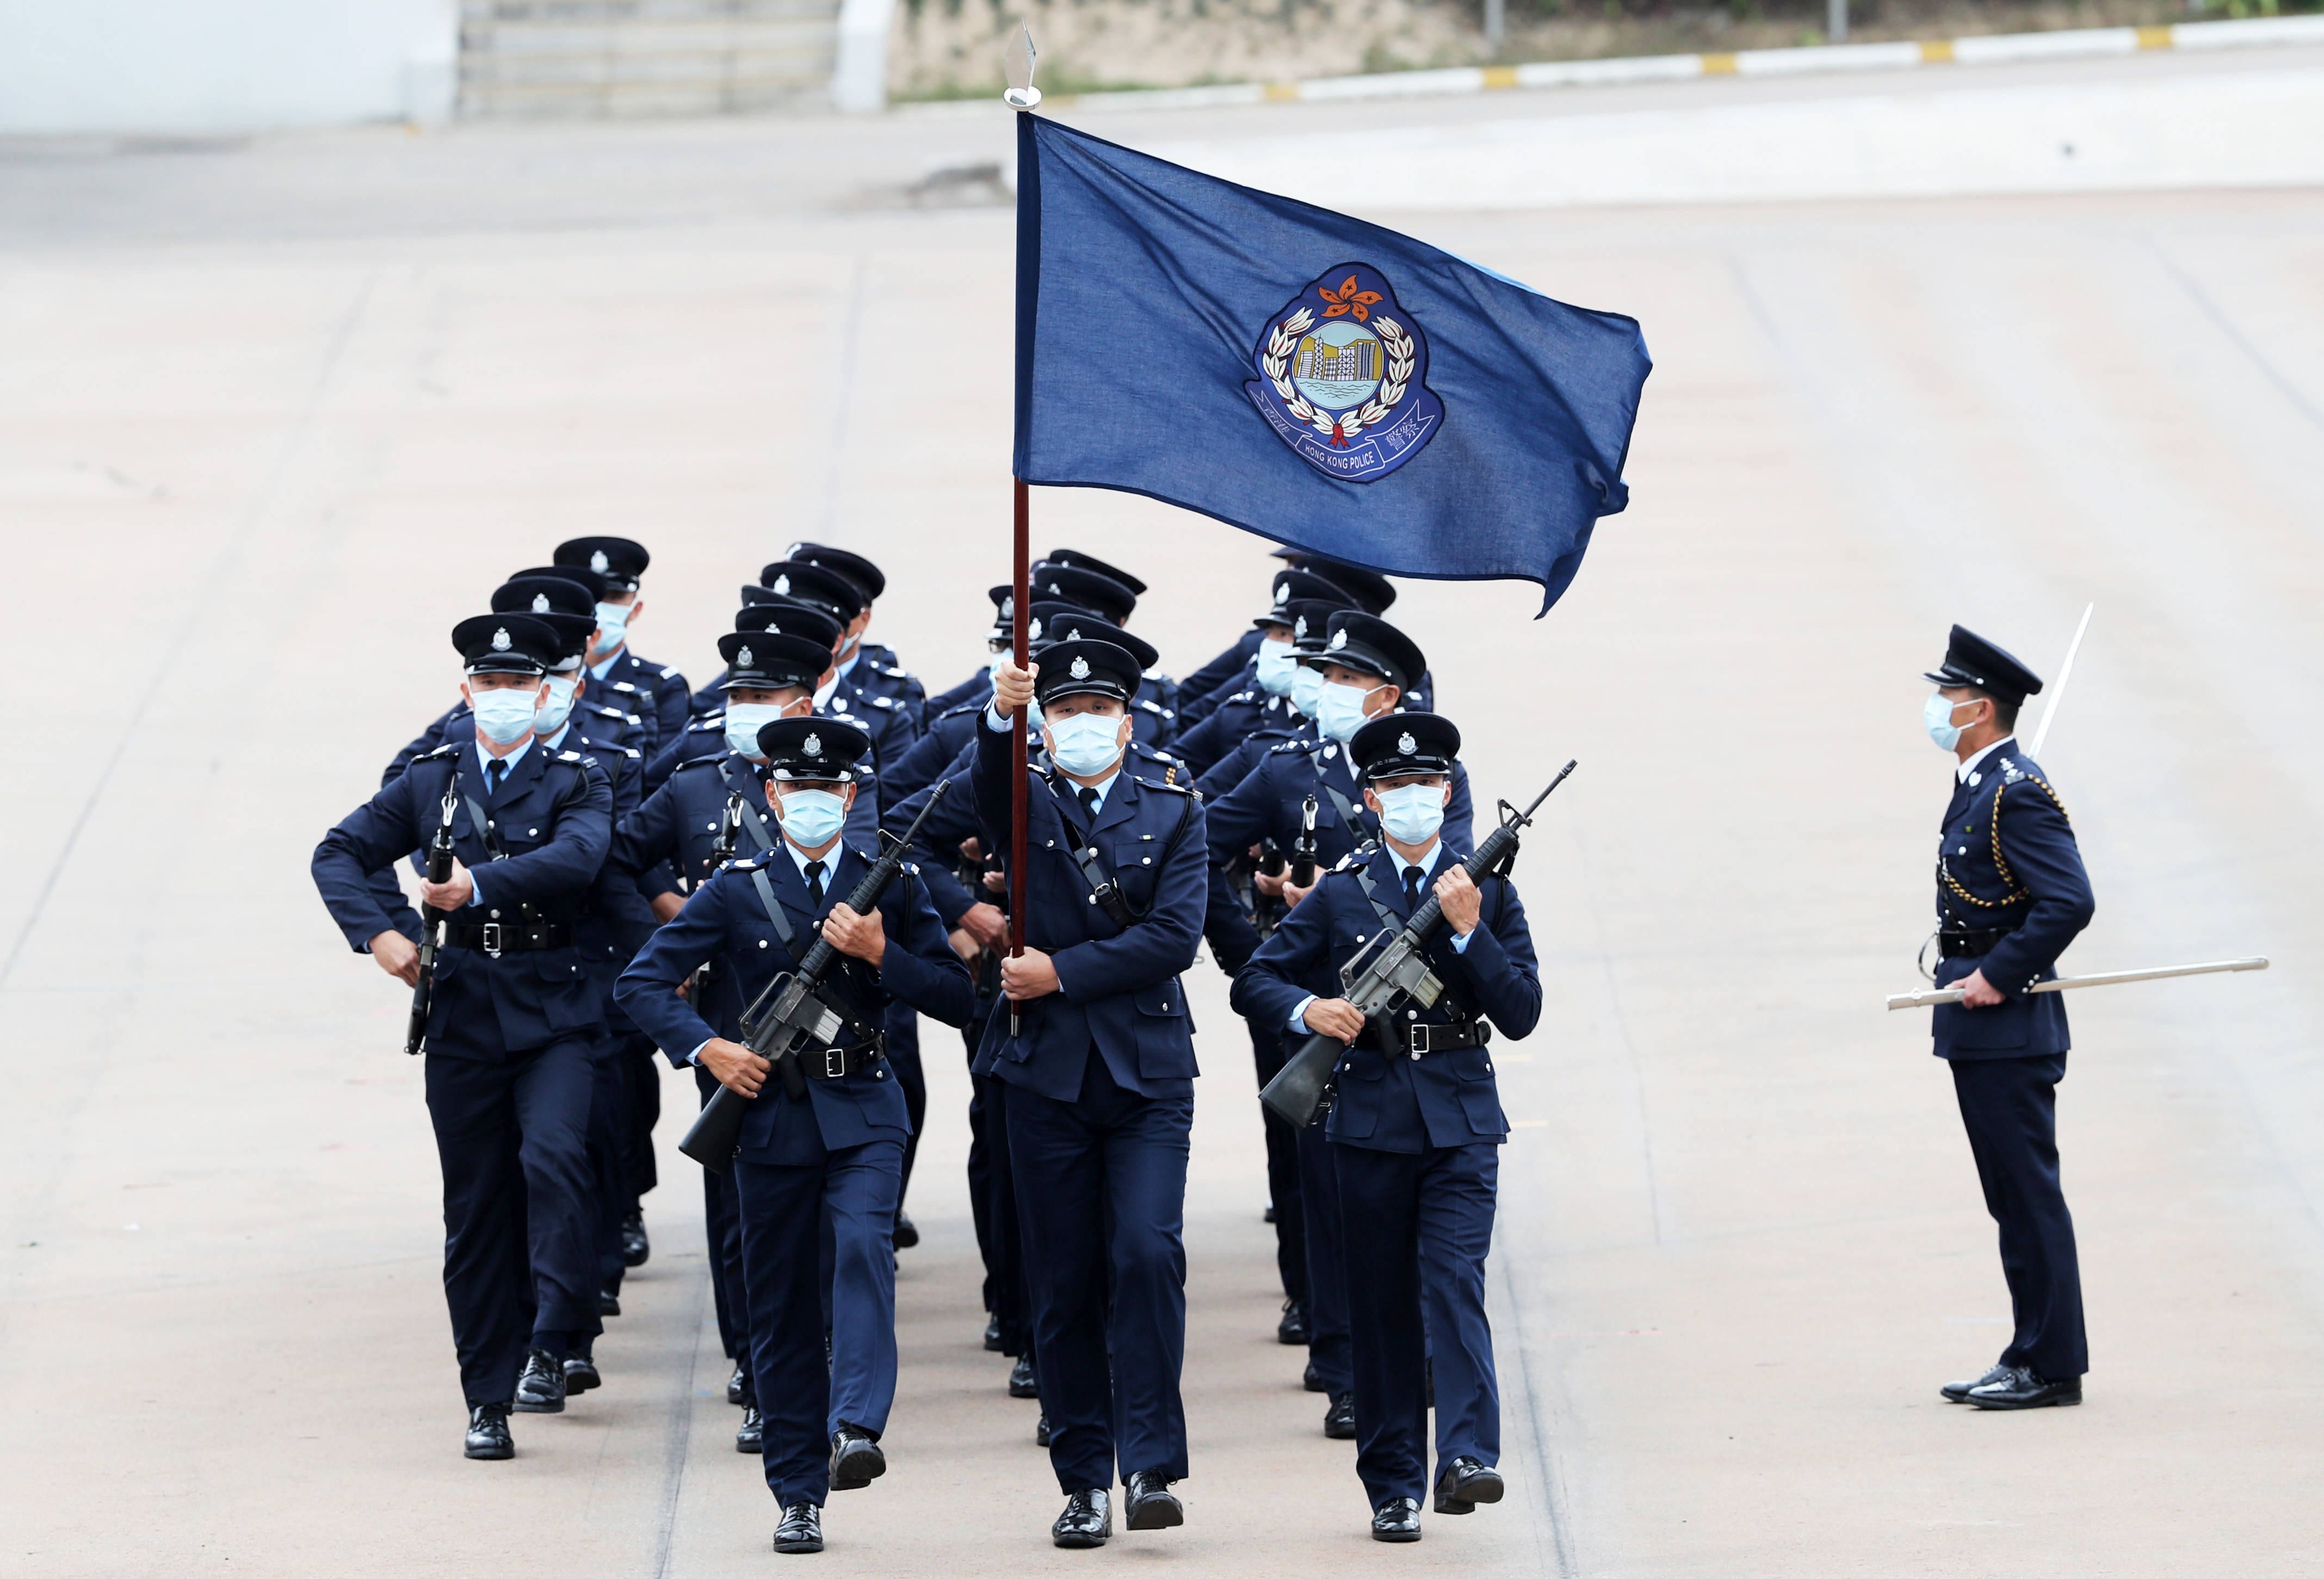 4月15日,香港警察学院举行开放日,仪仗队首次表演中式步操